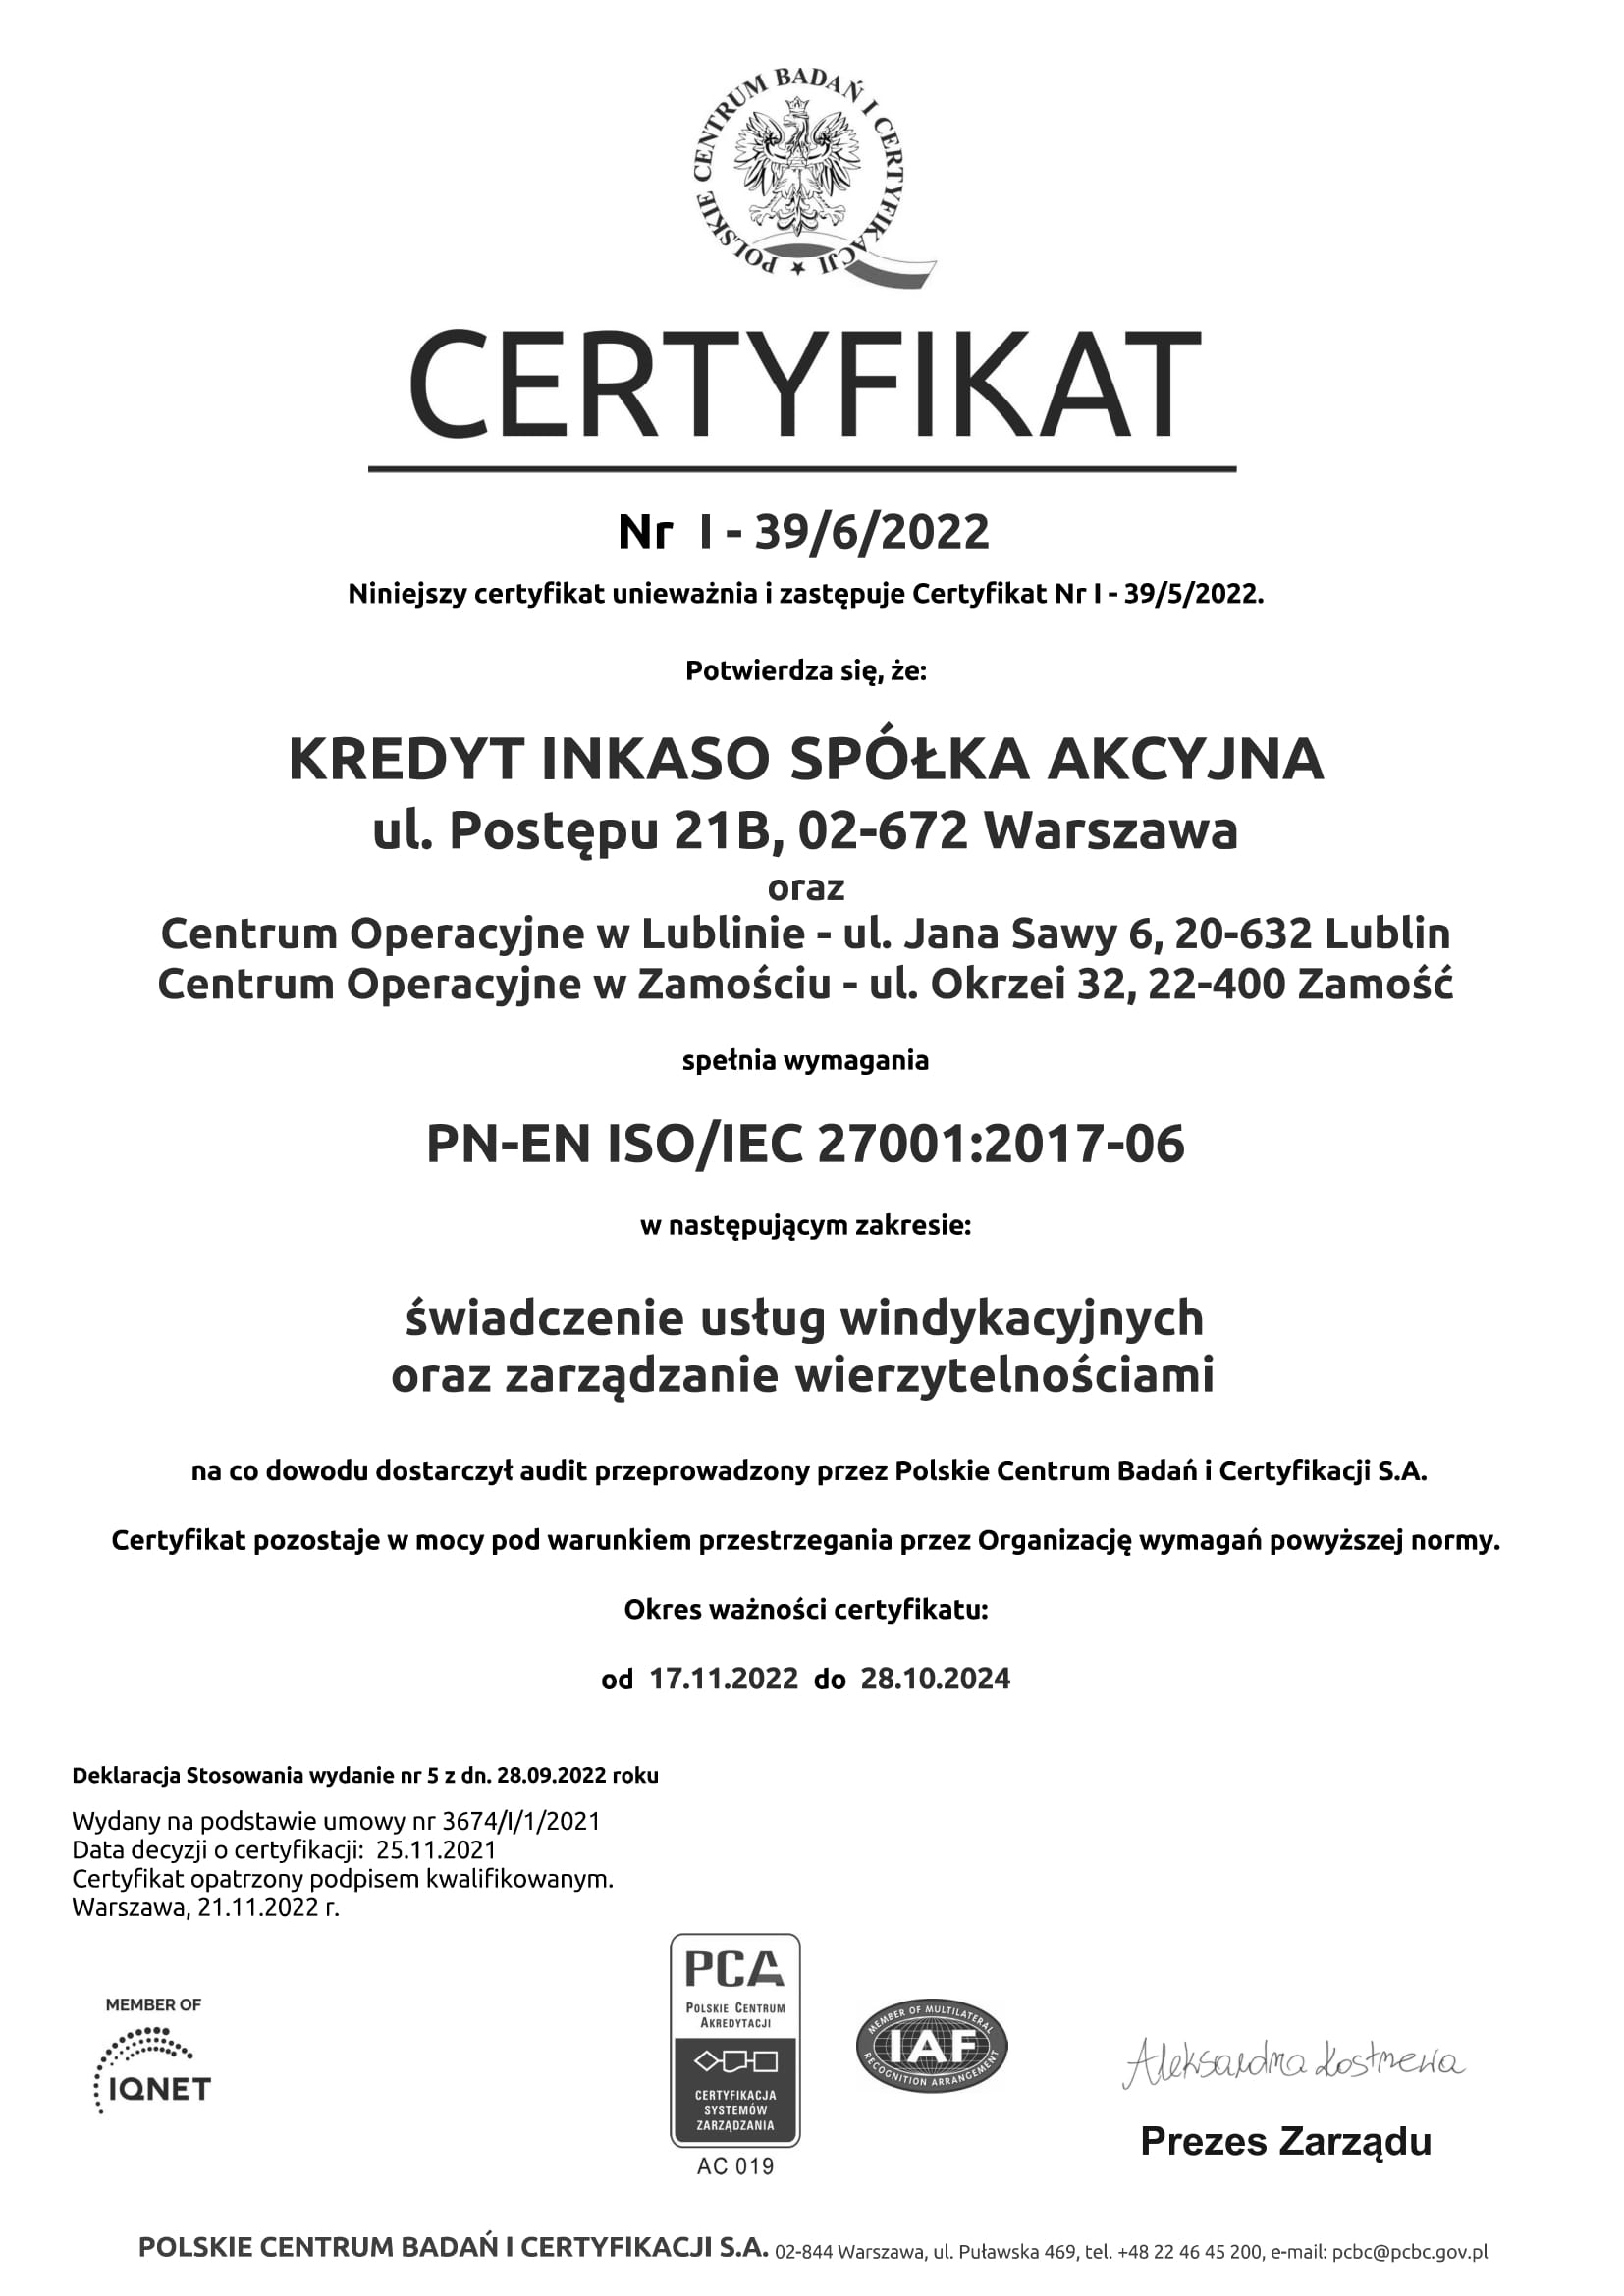 Kredyt Inkaso - certyfikat